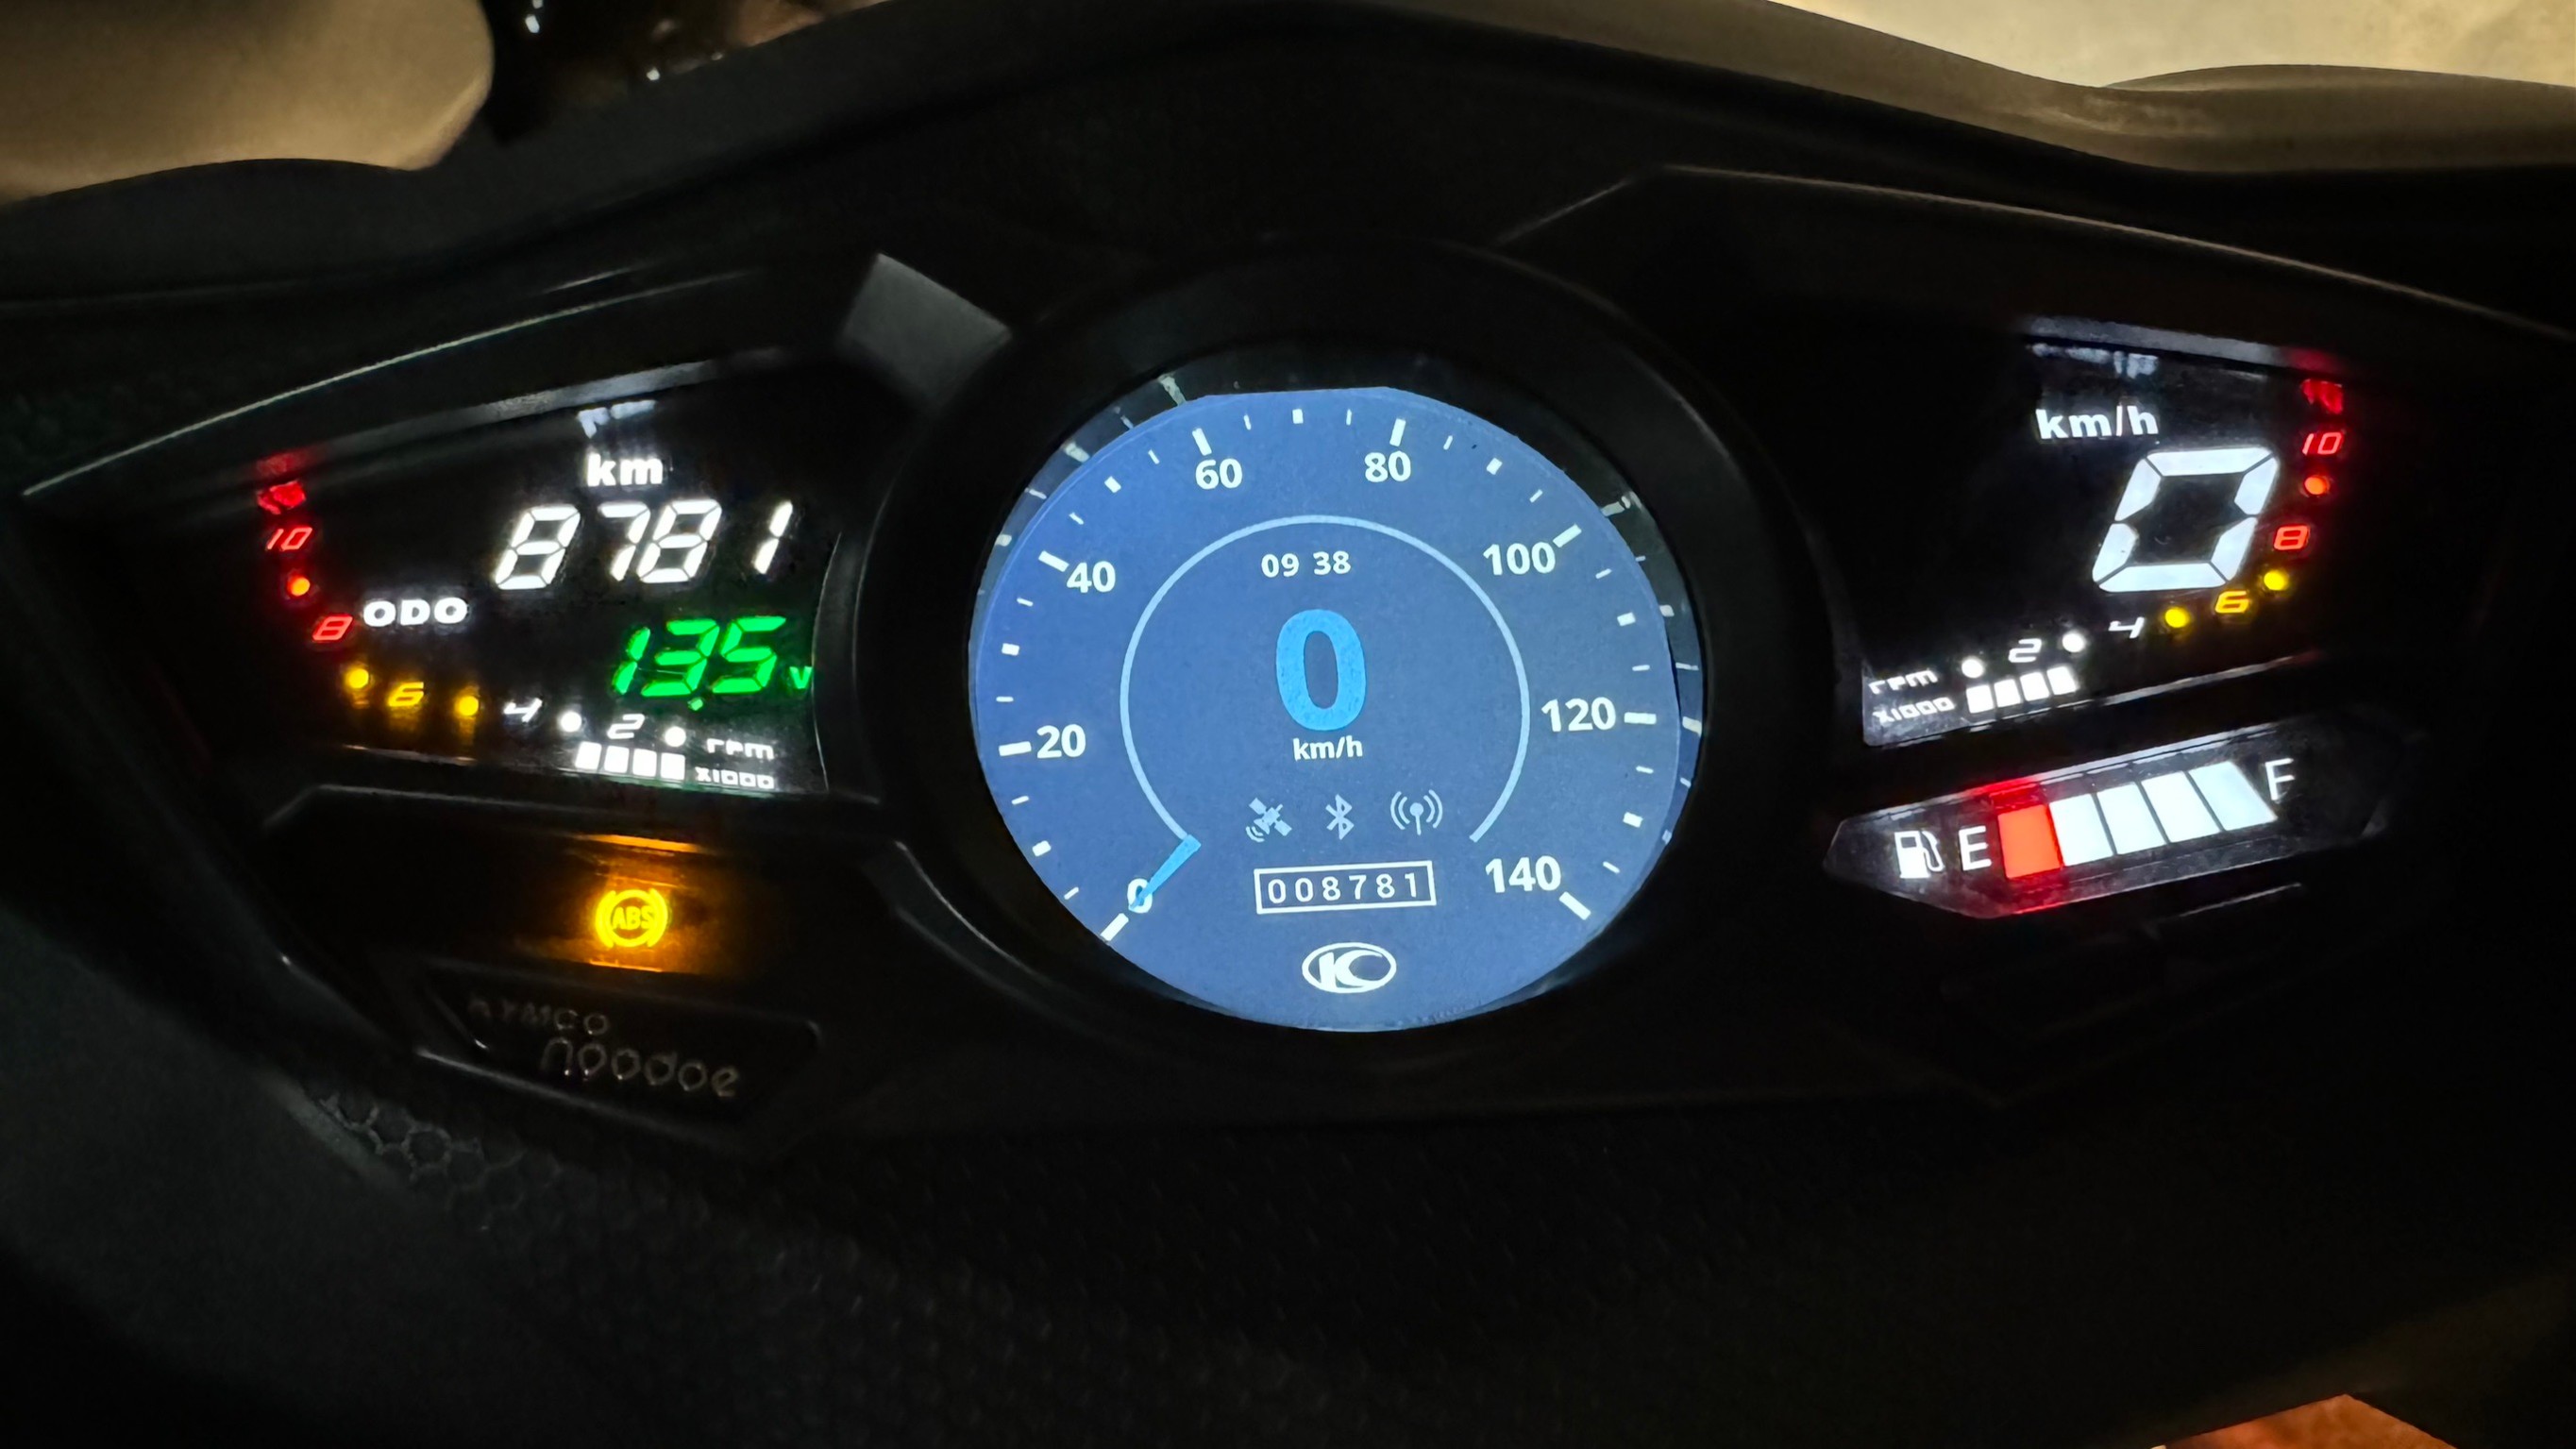 光陽 RACING S150 ABS版 - 中古/二手車出售中 自售 RACING S150 ABS版 白色跑8800公里2022年。近全新無刮傷 | 個人自售